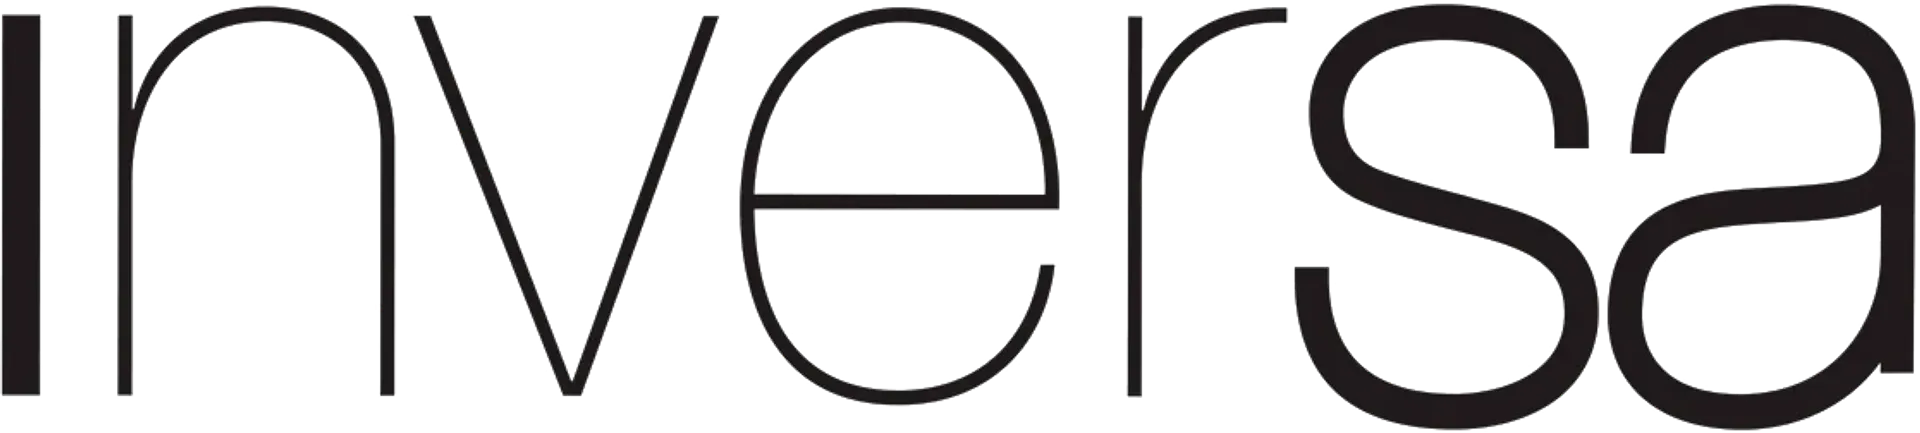 INVERSA logo de catálogo